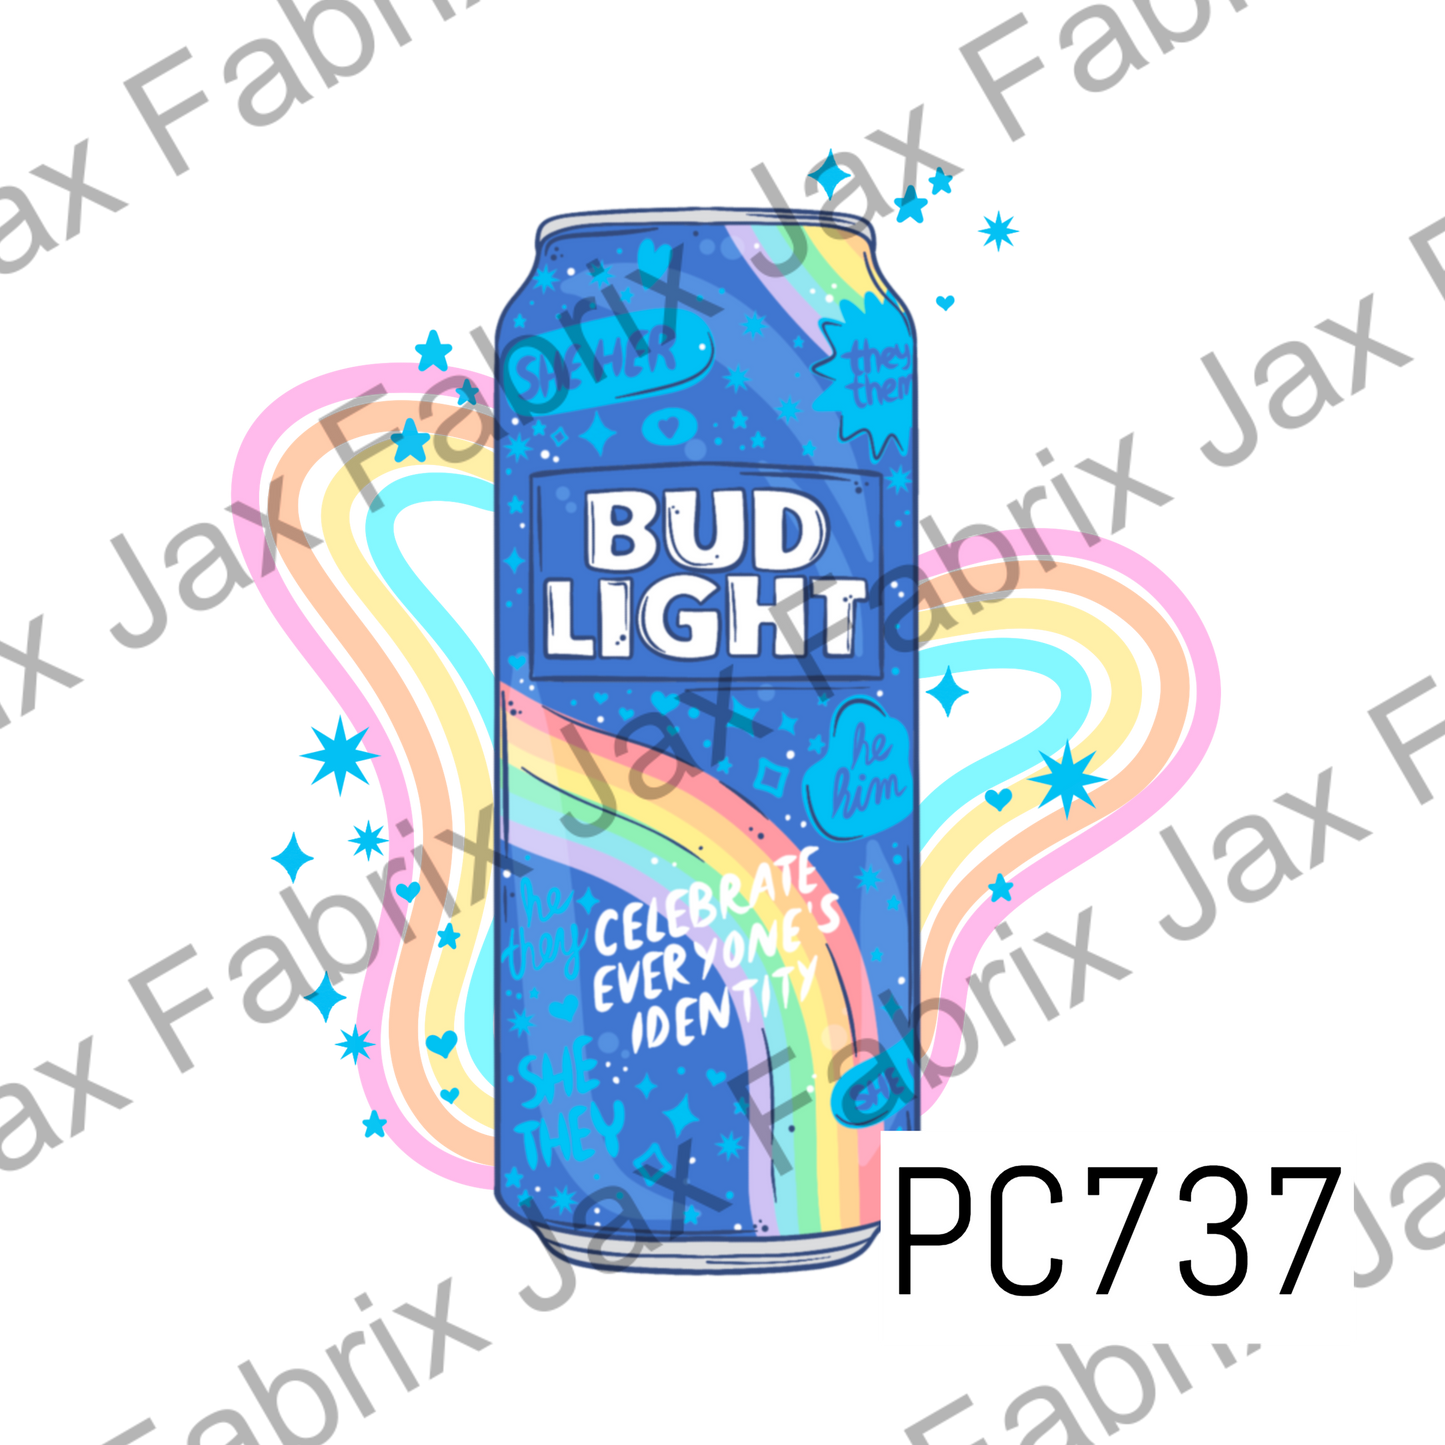 Beer Pride PNG PC737